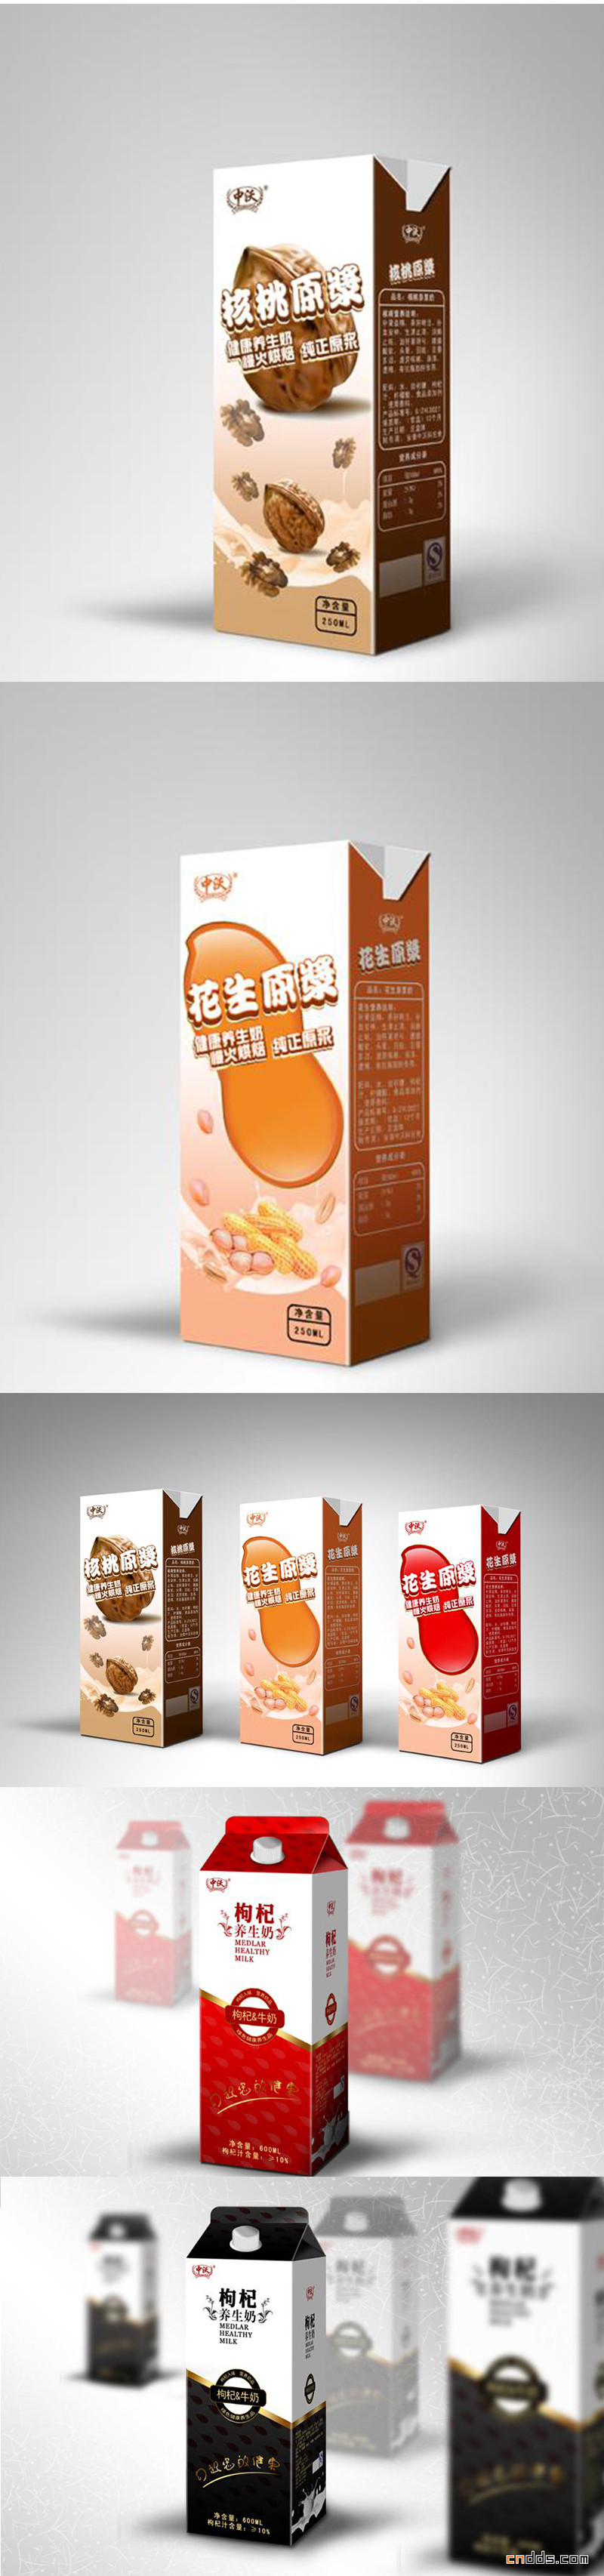 牛奶饮品包装设计